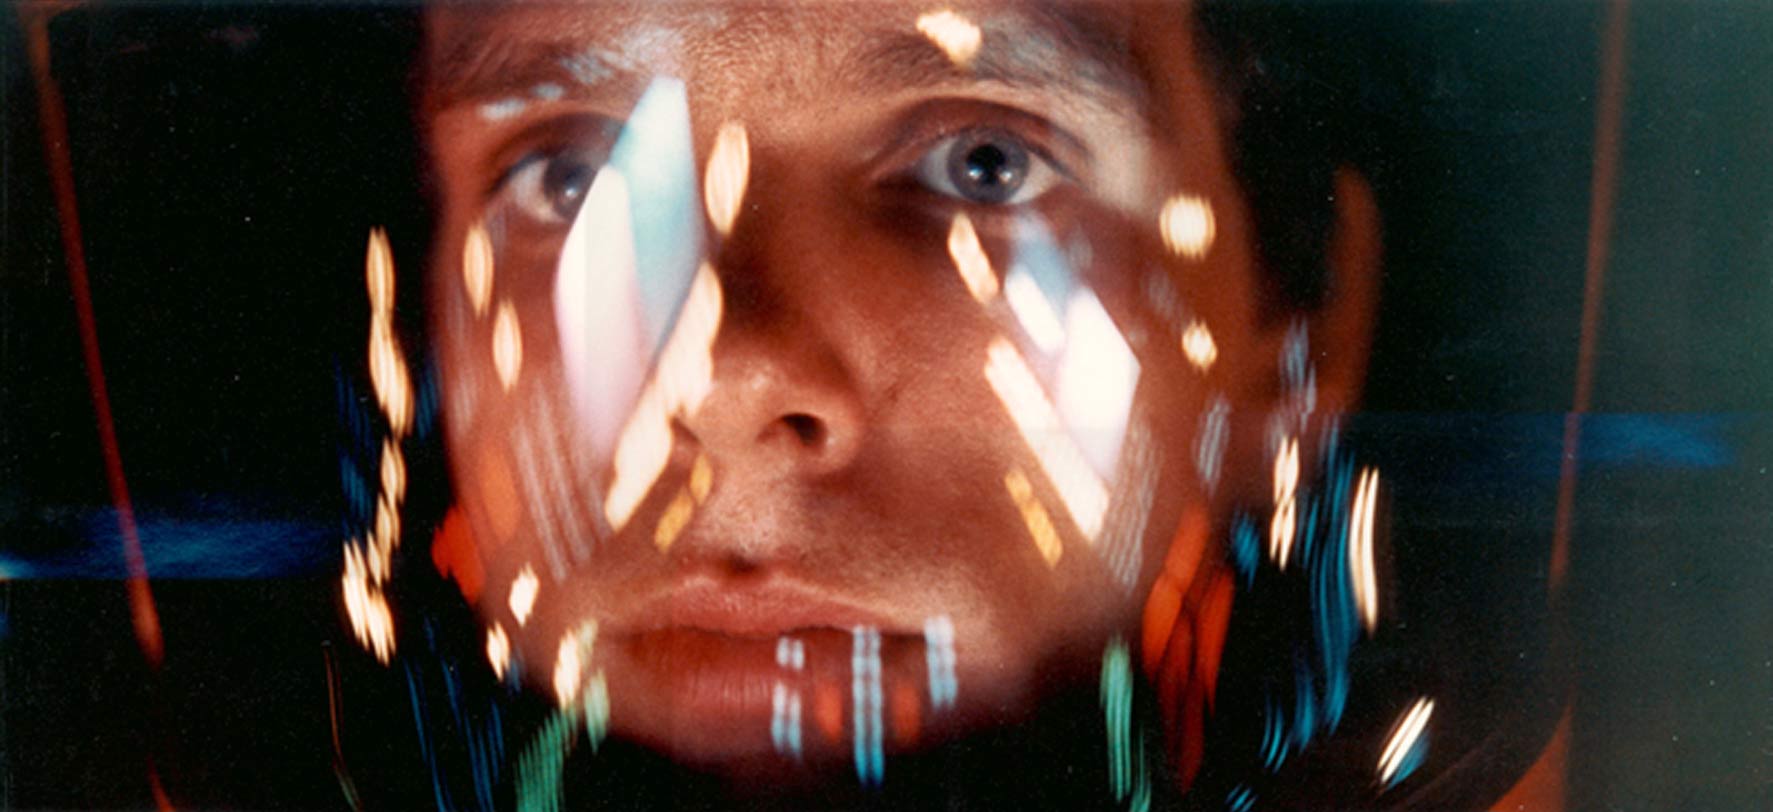 کیر دوله در نقش دیوید بومن در لباس فضانورد در فیلم اودیسه فضایی